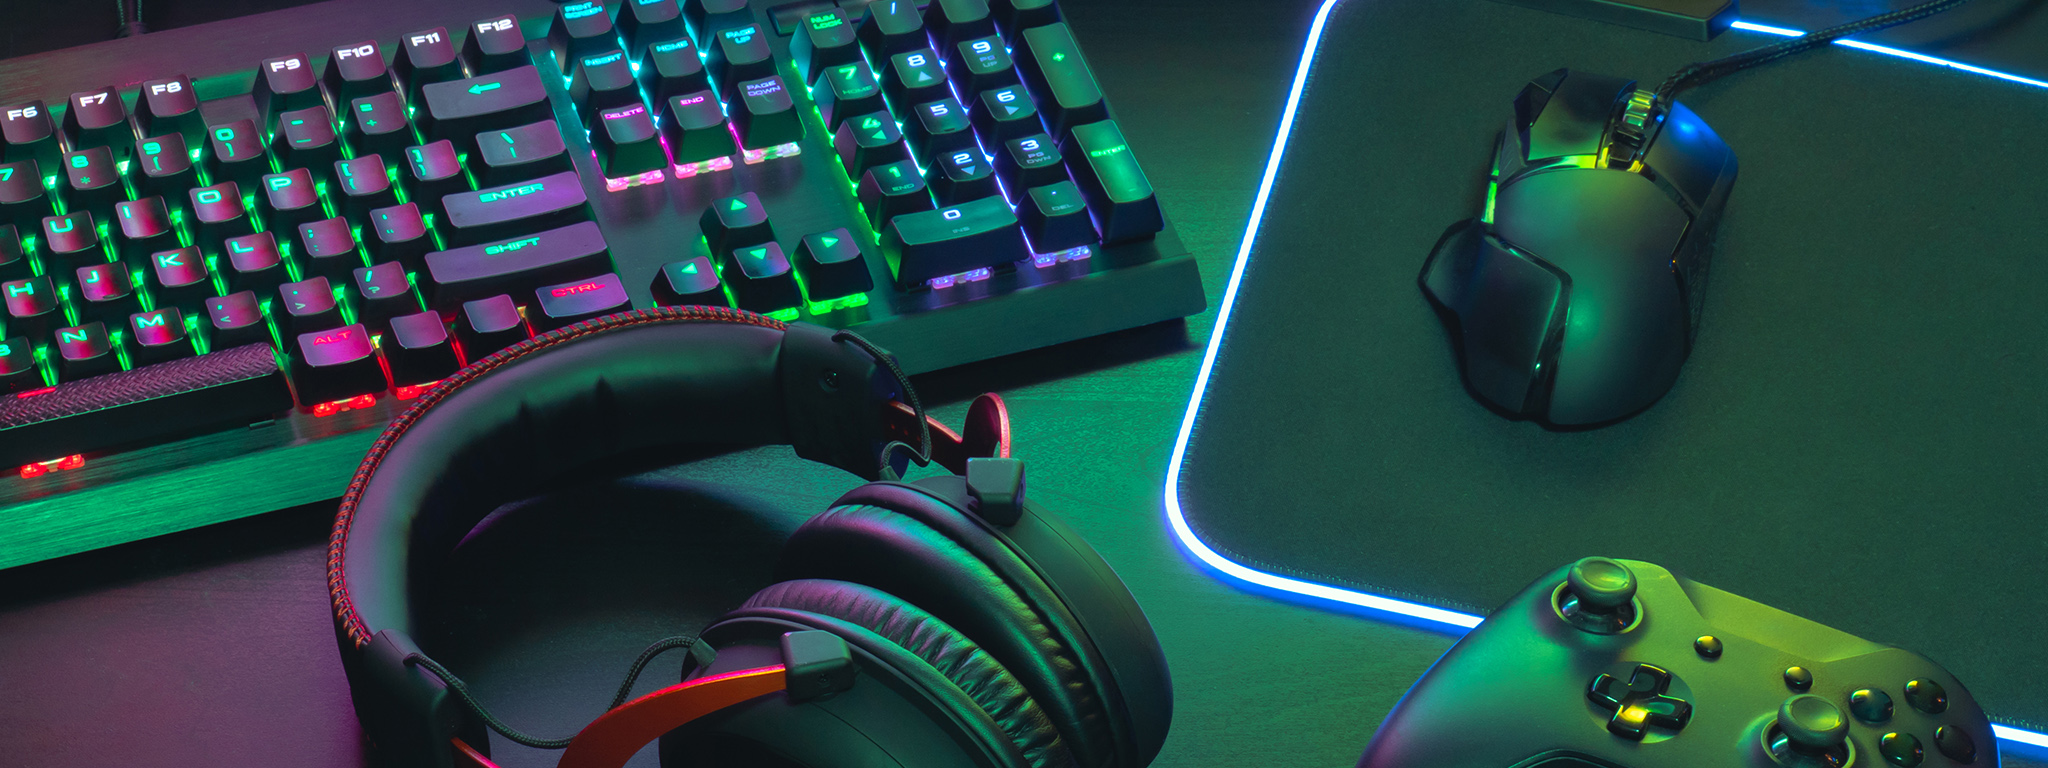 Stanowisko gracza: klawiatura RGB, zestaw słuchawkowy dla graczy, mysz do gier i podkładka pod mysz RGB, kontroler Xbox